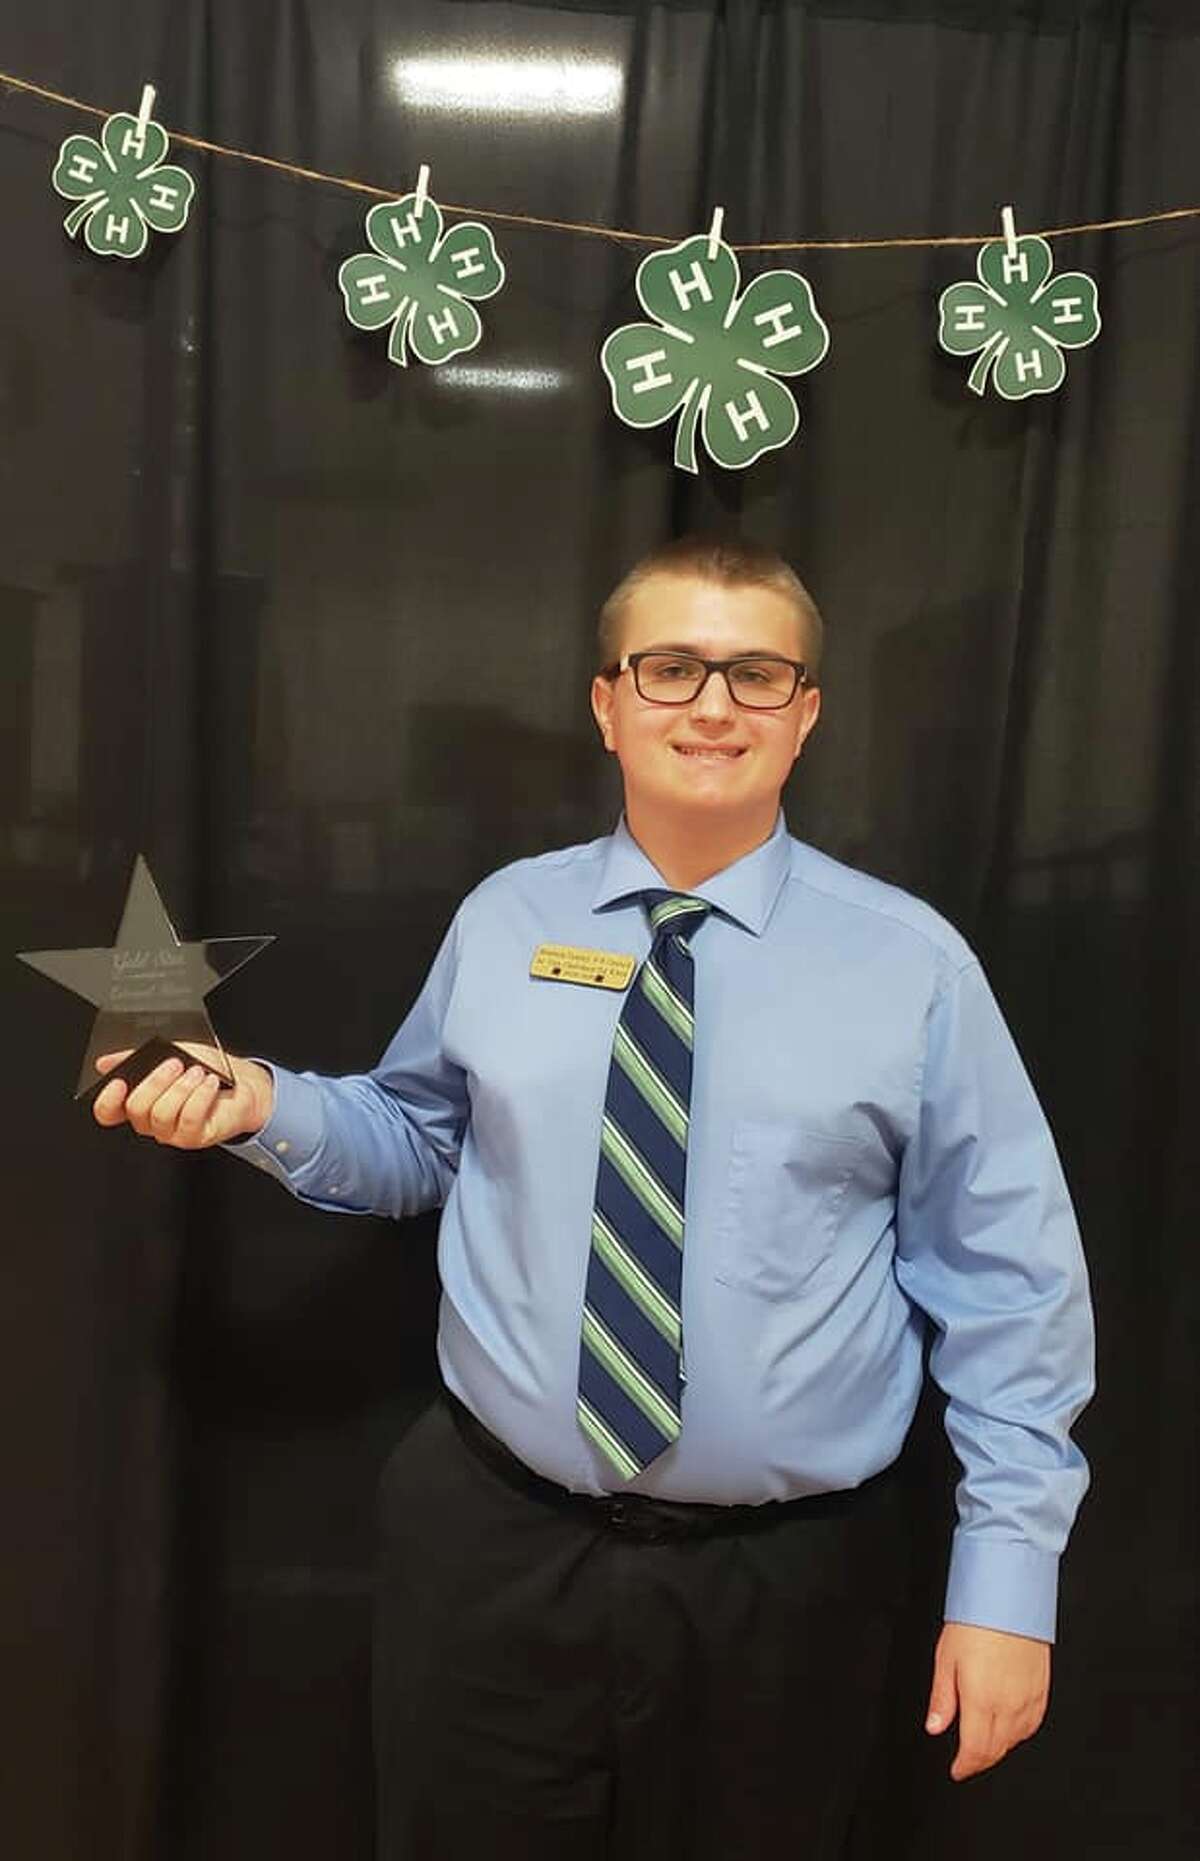 Manvel High School junior Edward Klein has received the Brazoria County 4-H Gold Star award. 